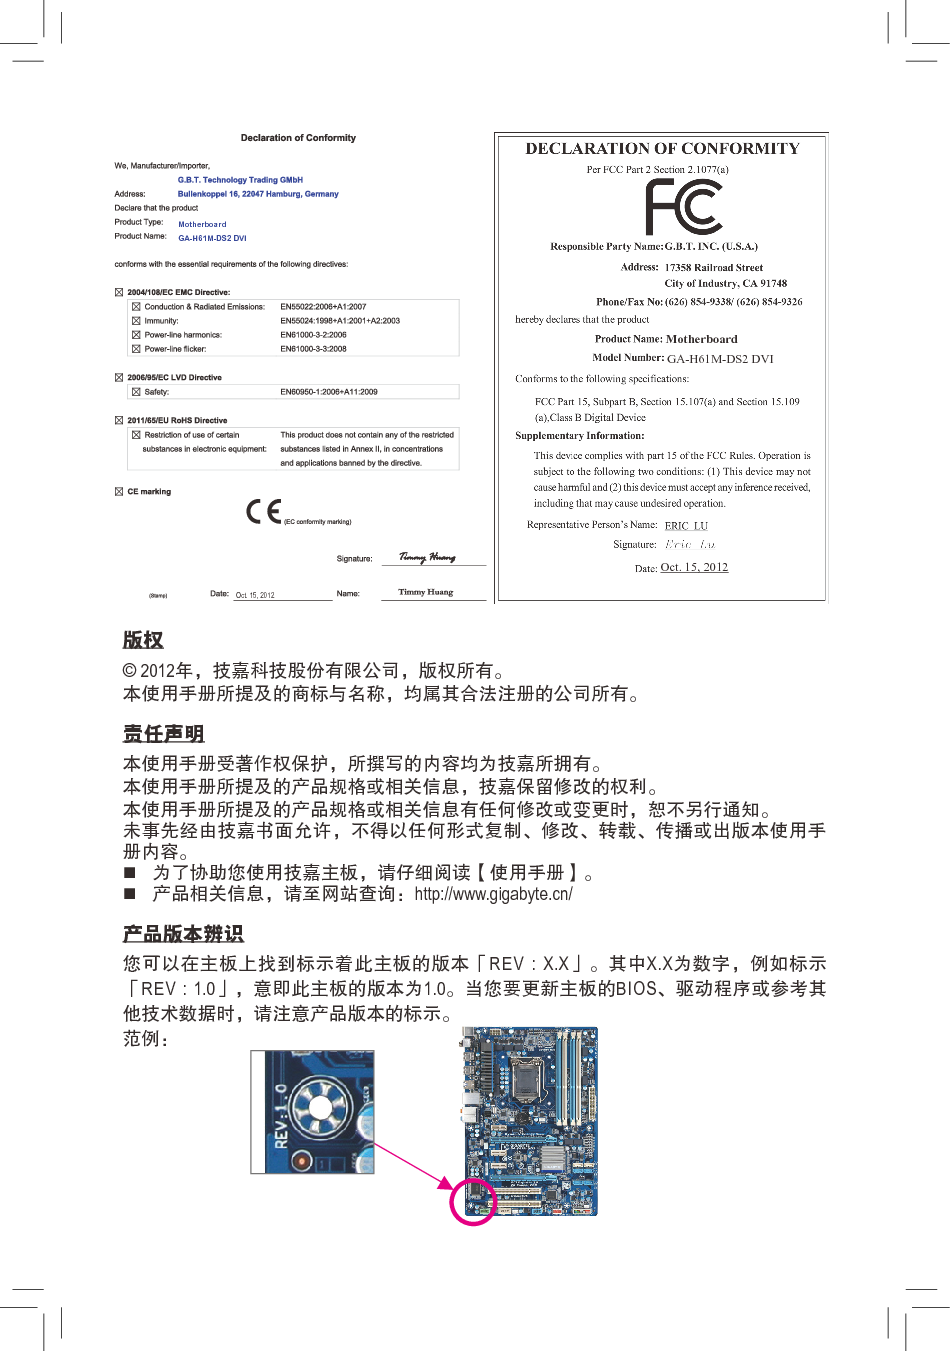 技嘉 Gigabyte GA-H61M-DS2 DVI 使用手册 第1页